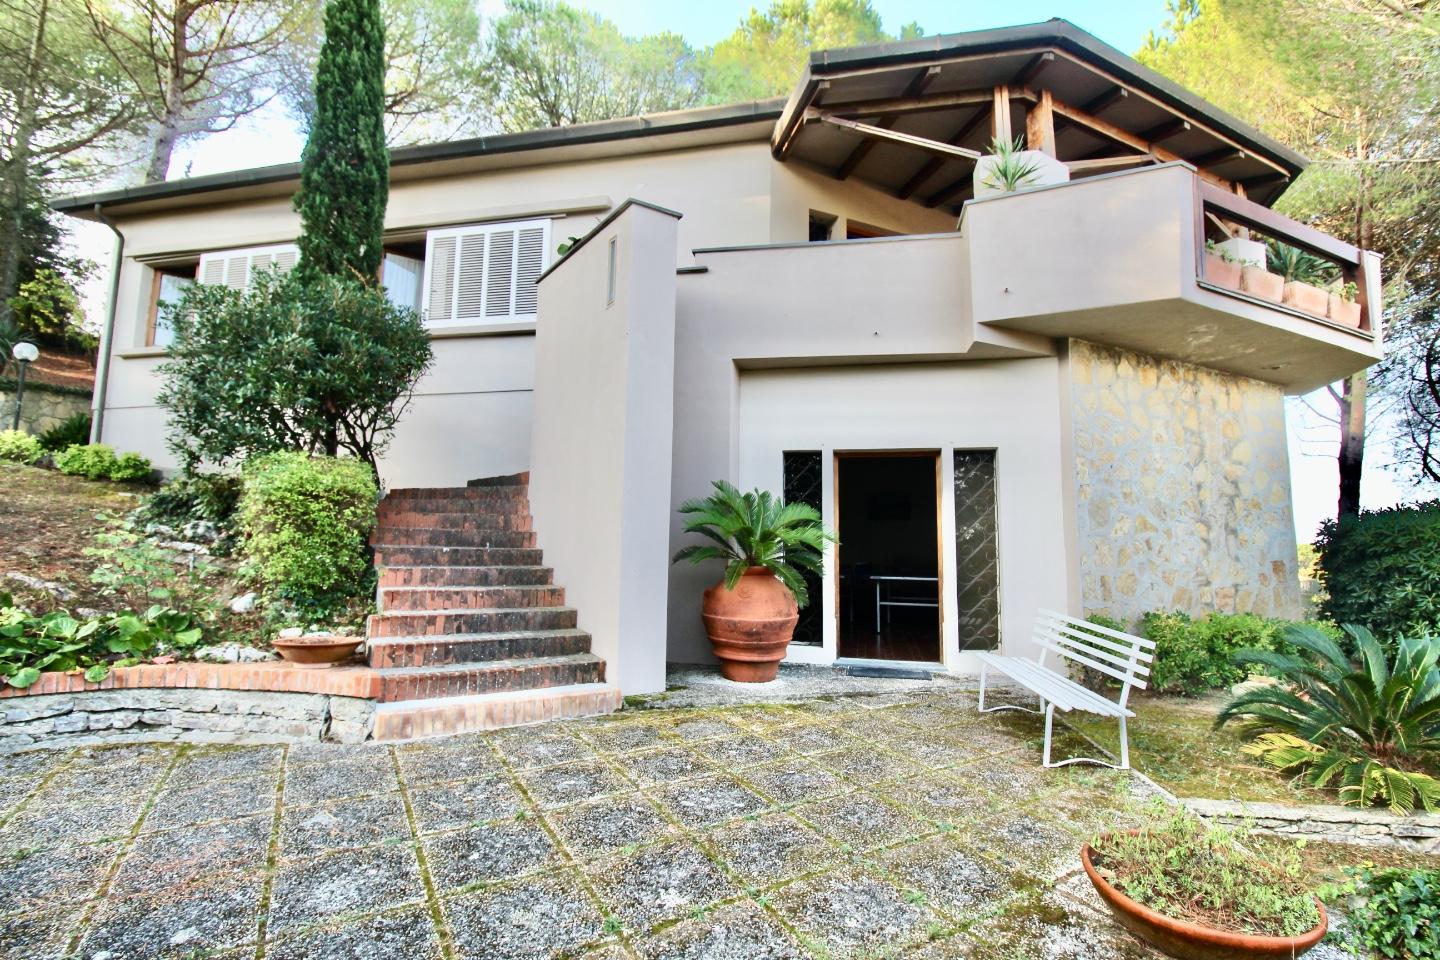 Villa in vendita a Casciana Terme Lari, 10 locali, prezzo € 550.000 | PortaleAgenzieImmobiliari.it